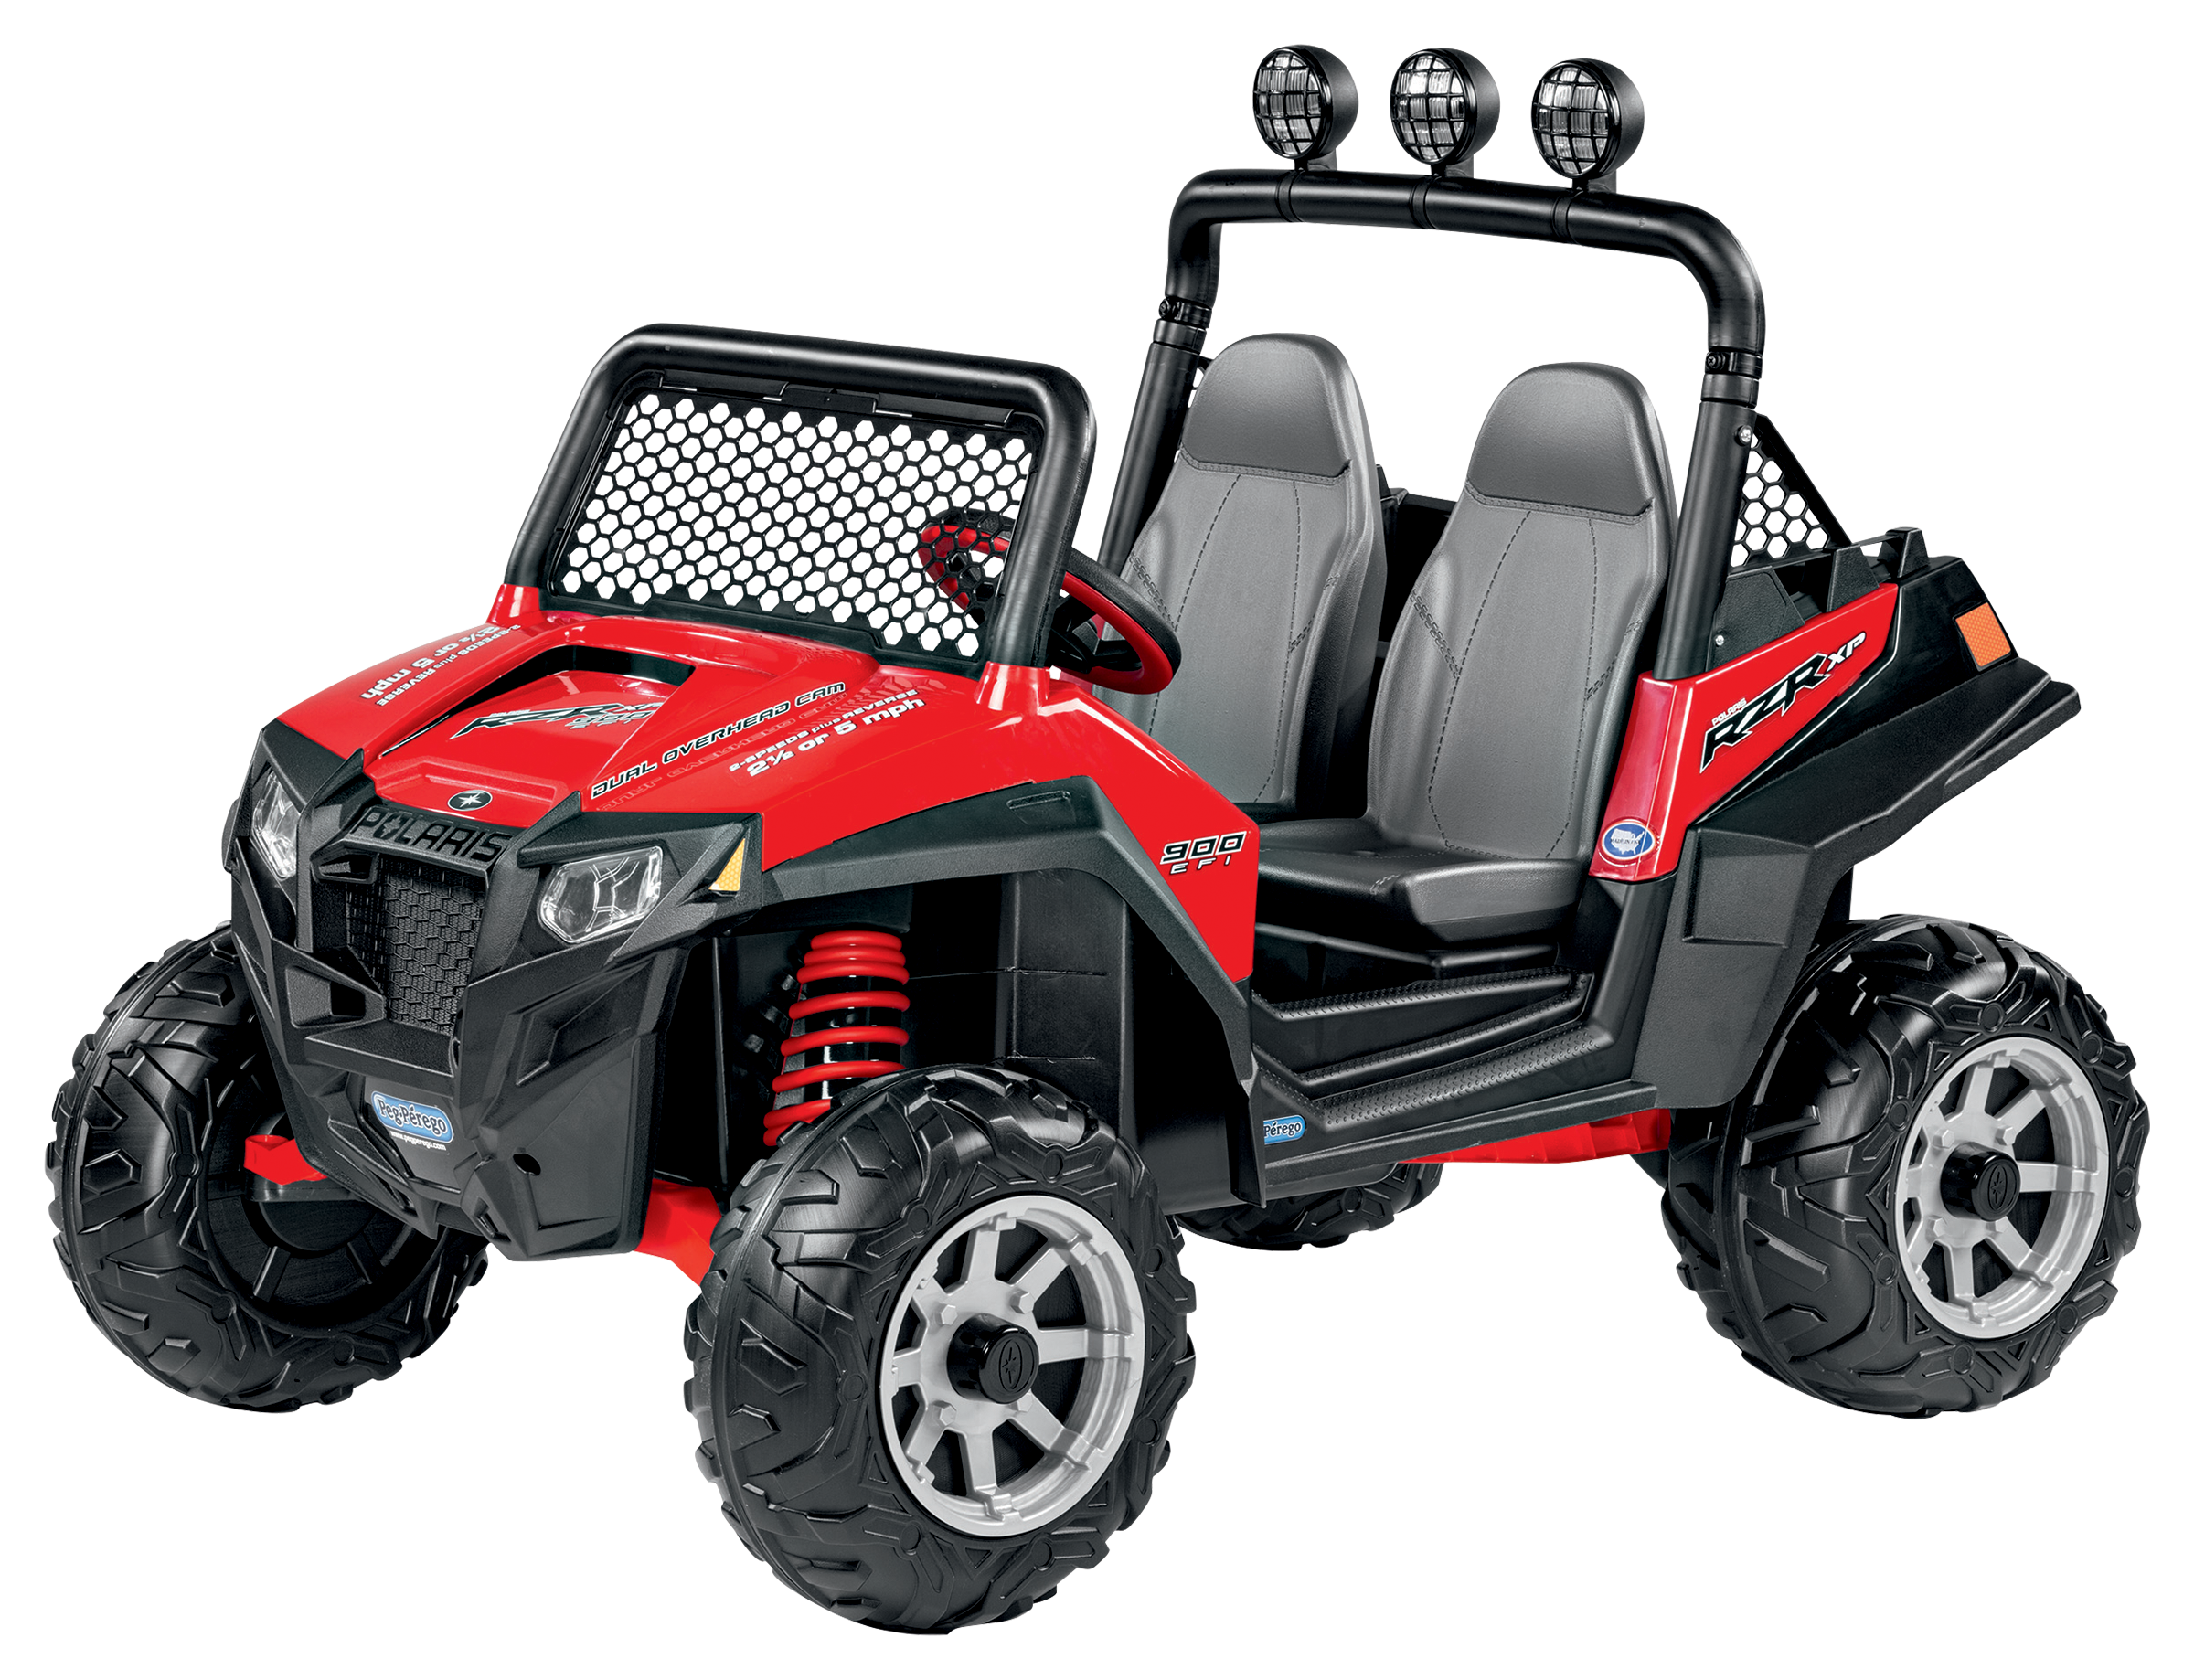 Peg-Perego Polaris RZR 900 ATV for Kids